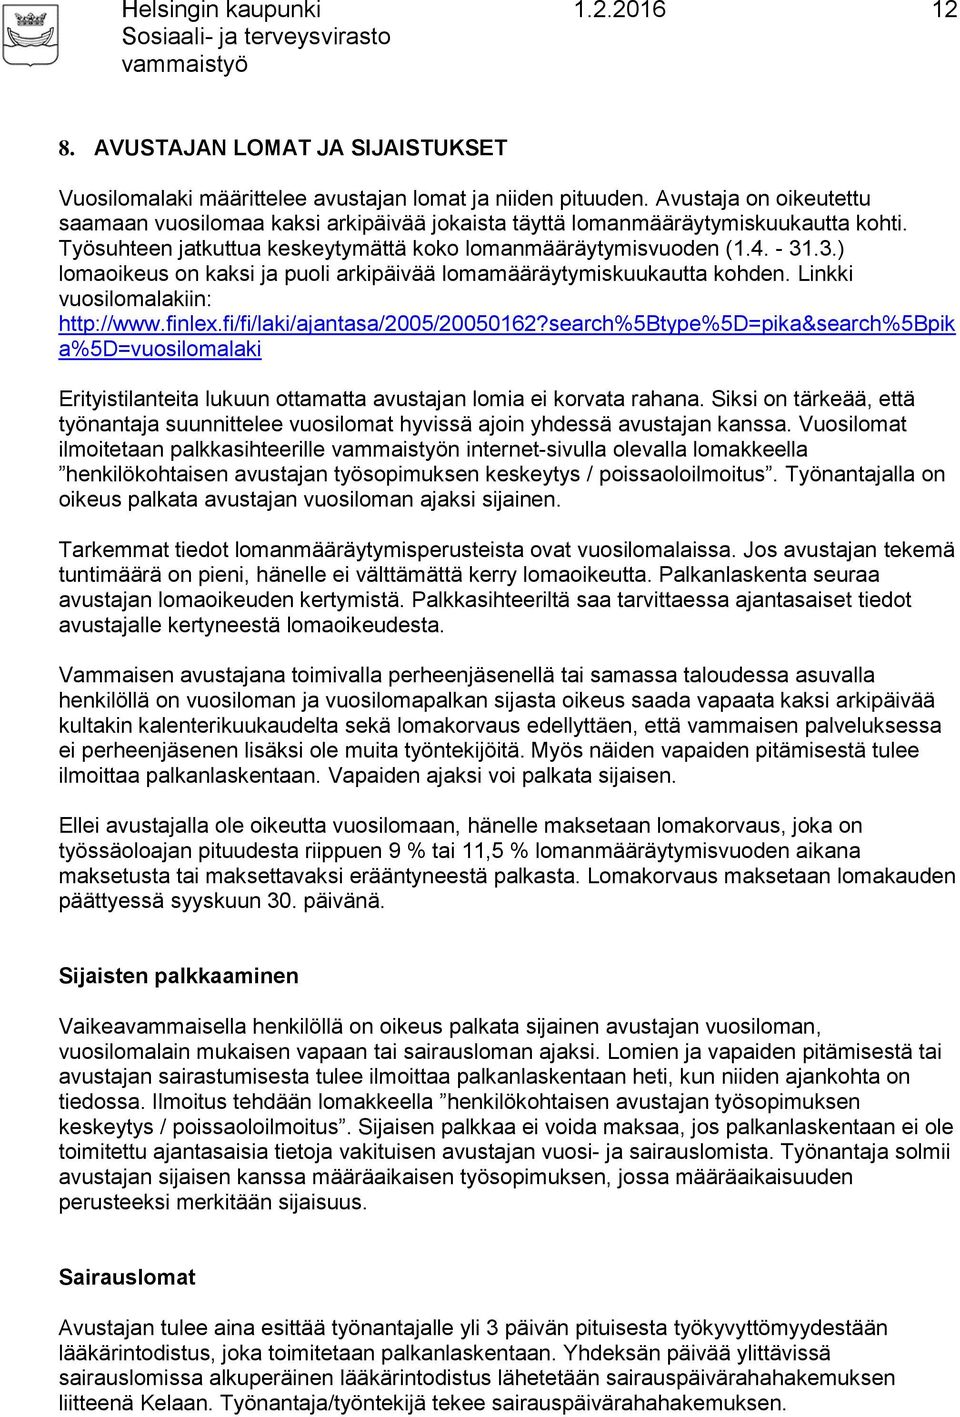 .3.) lomaoikeus on kaksi ja puoli arkipäivää lomamääräytymiskuukautta kohden. Linkki vuosilomalakiin: http://www.finlex.fi/fi/laki/ajantasa/2005/20050162?